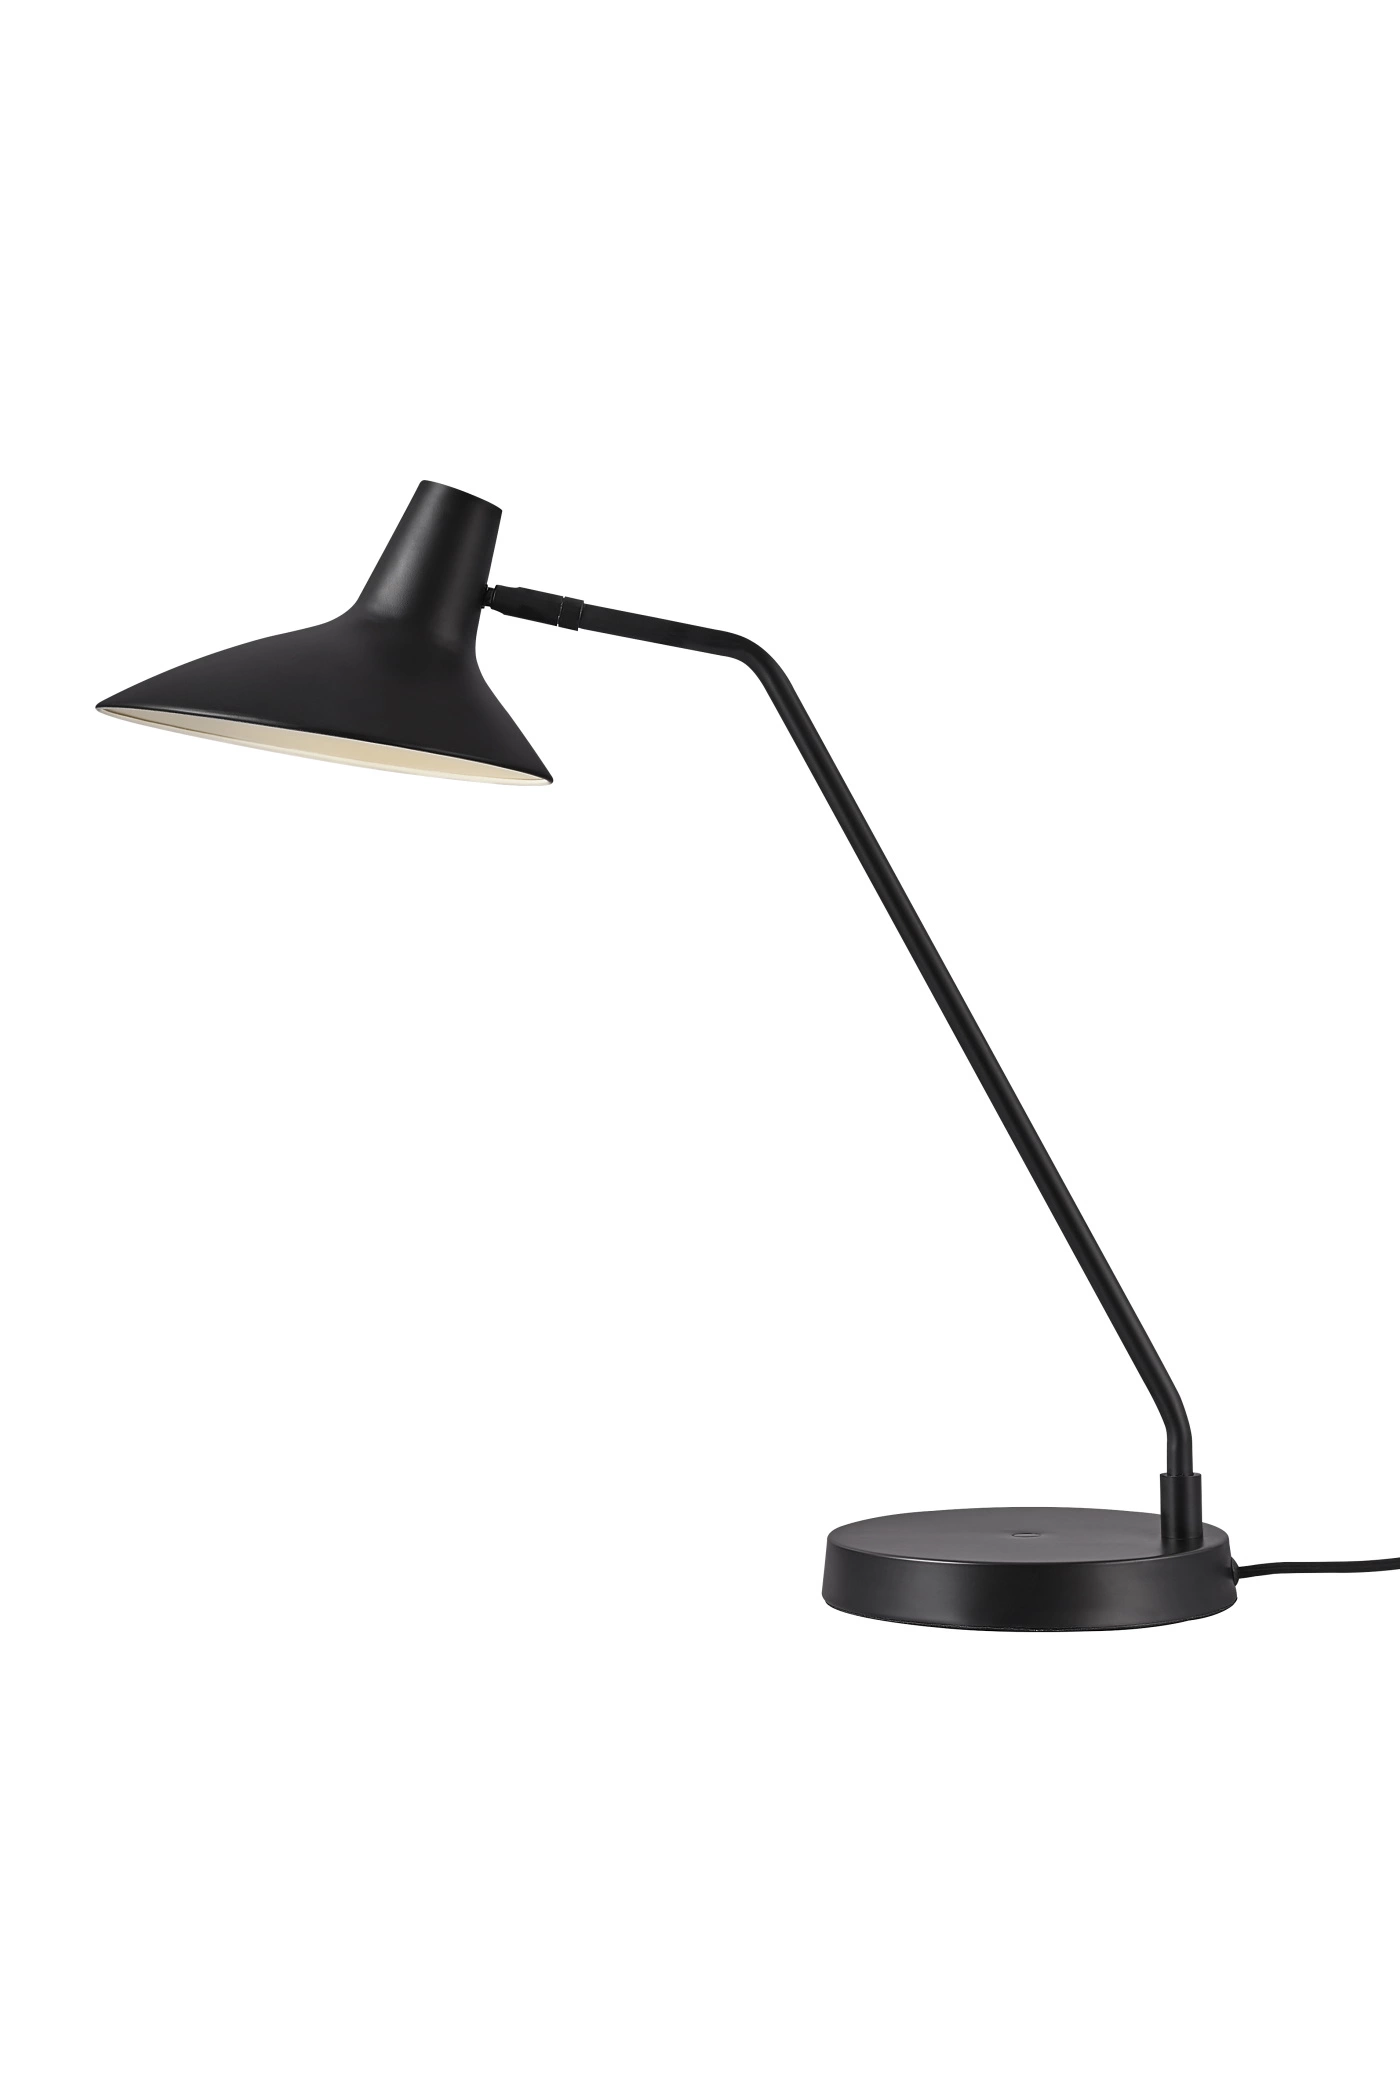   
                        Настільна лампа NORDLUX (Данія) 51926    
                         у стилі скандинавський, лофт.  
                        Тип джерела світла: cвітлодіодні led, енергозберігаючі, розжарювання.                                                 Кольори плафонів і підвісок: чорний, білий.                         Матеріал: метал.                          фото 1